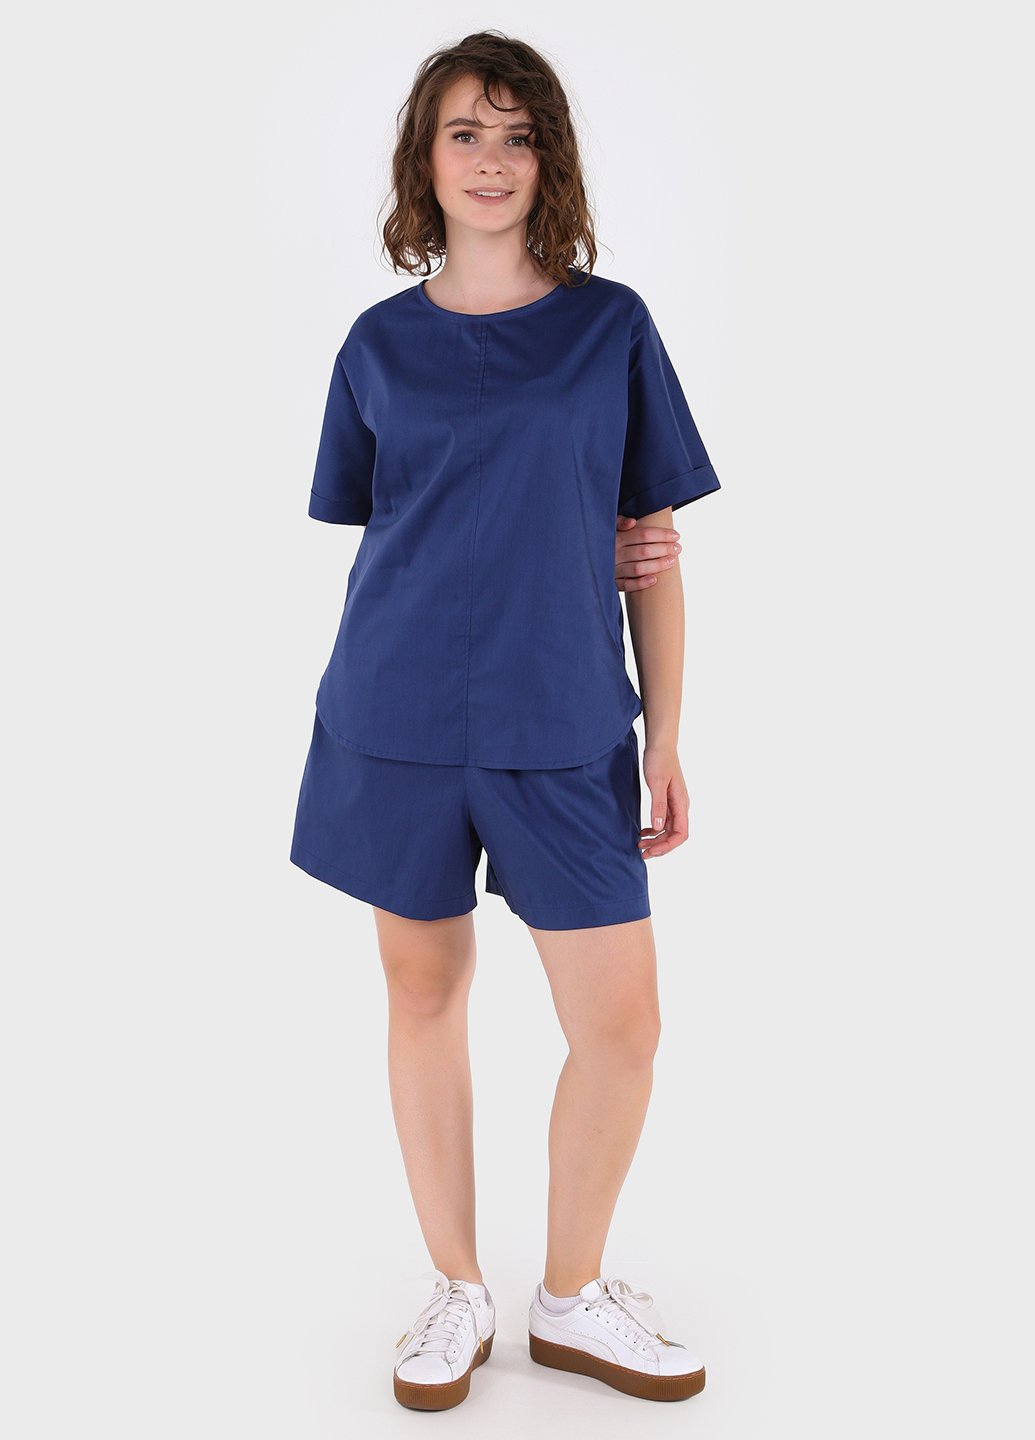 Купить Костюм женский из хлопка синего цвета Merlini Болонья 100000126, размер 42-44 в интернет-магазине